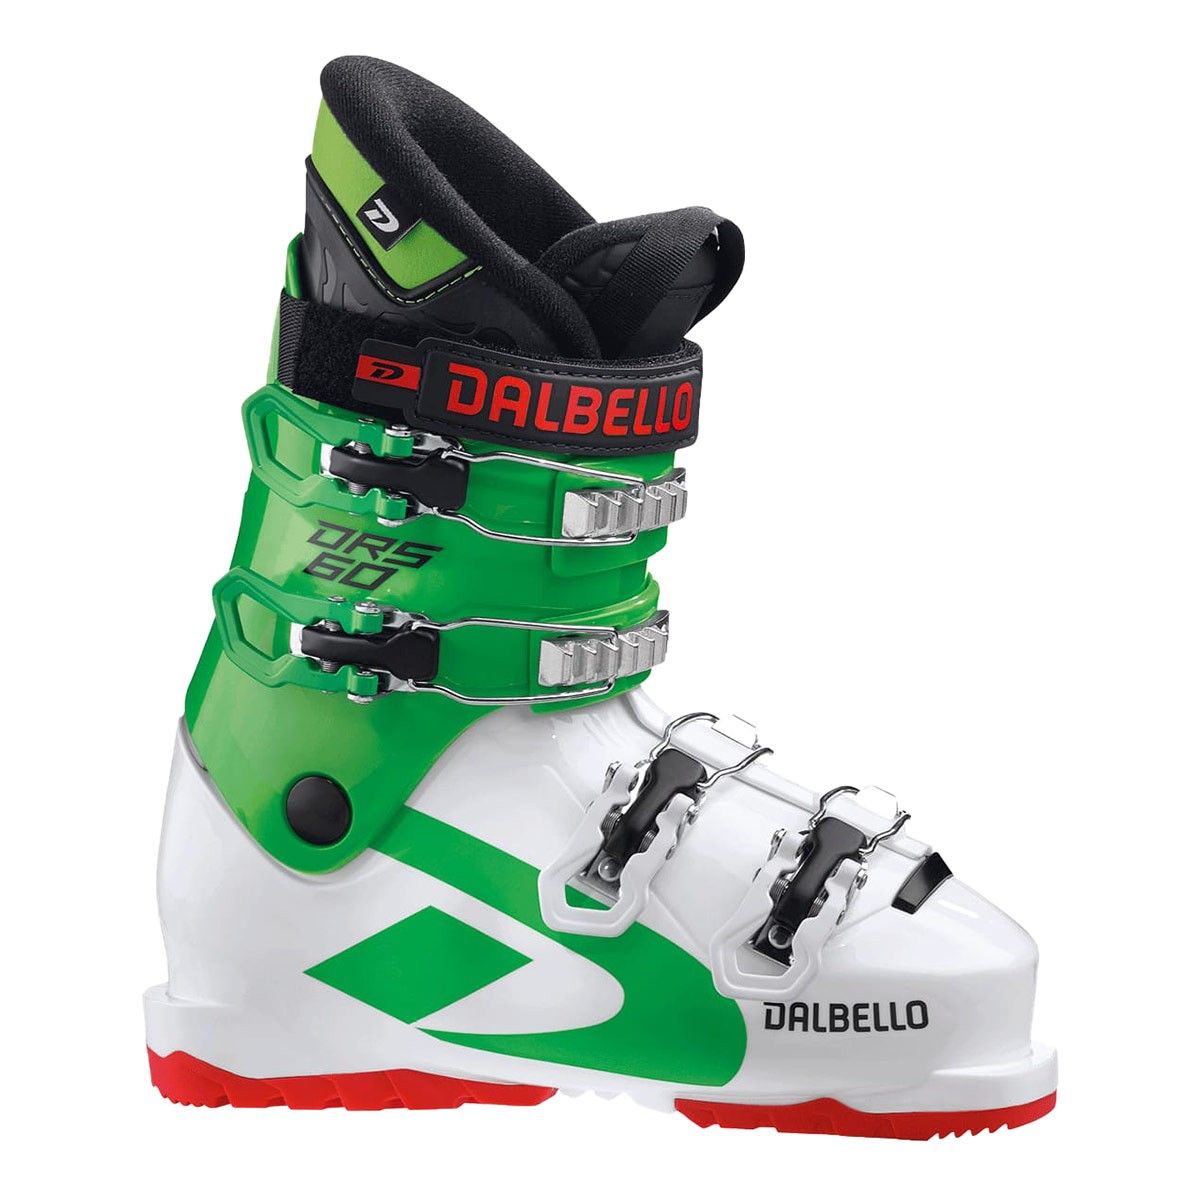  Scarponi sci Dalbello DRS 60 Junior (Colore: white-race green, Taglia: 25.5) 